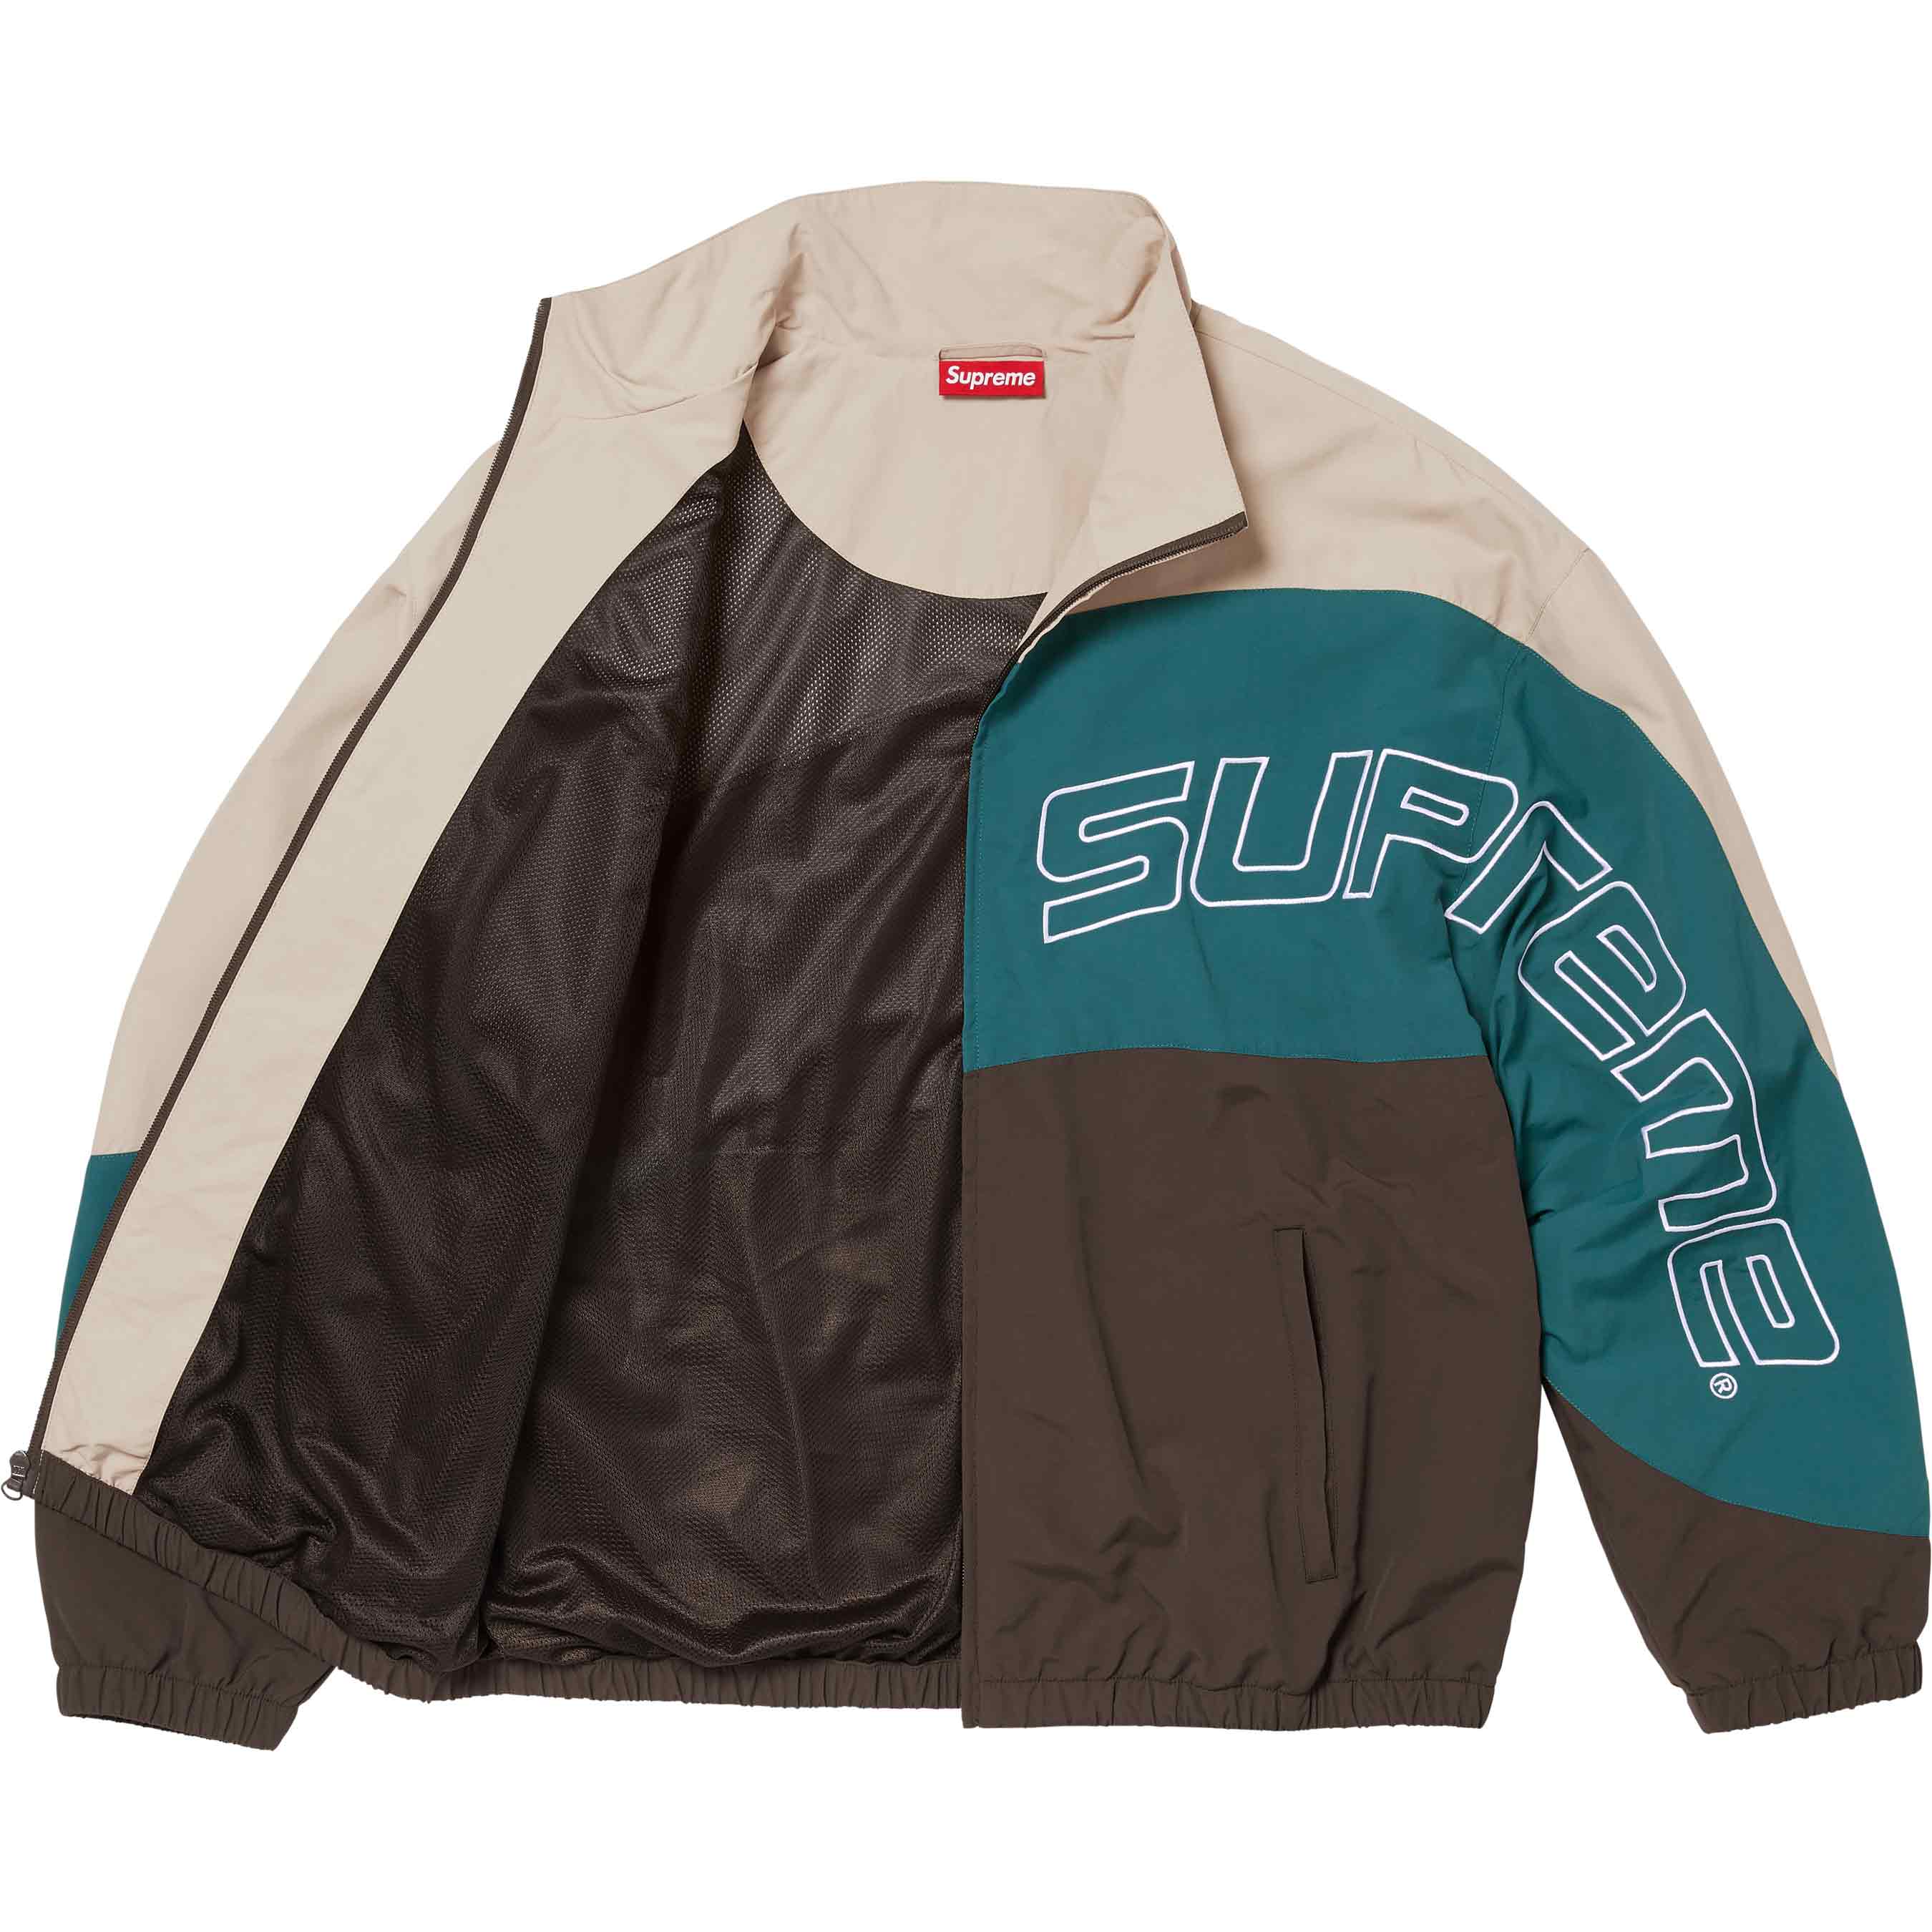 Curve Track Jacket - Shop - Supreme